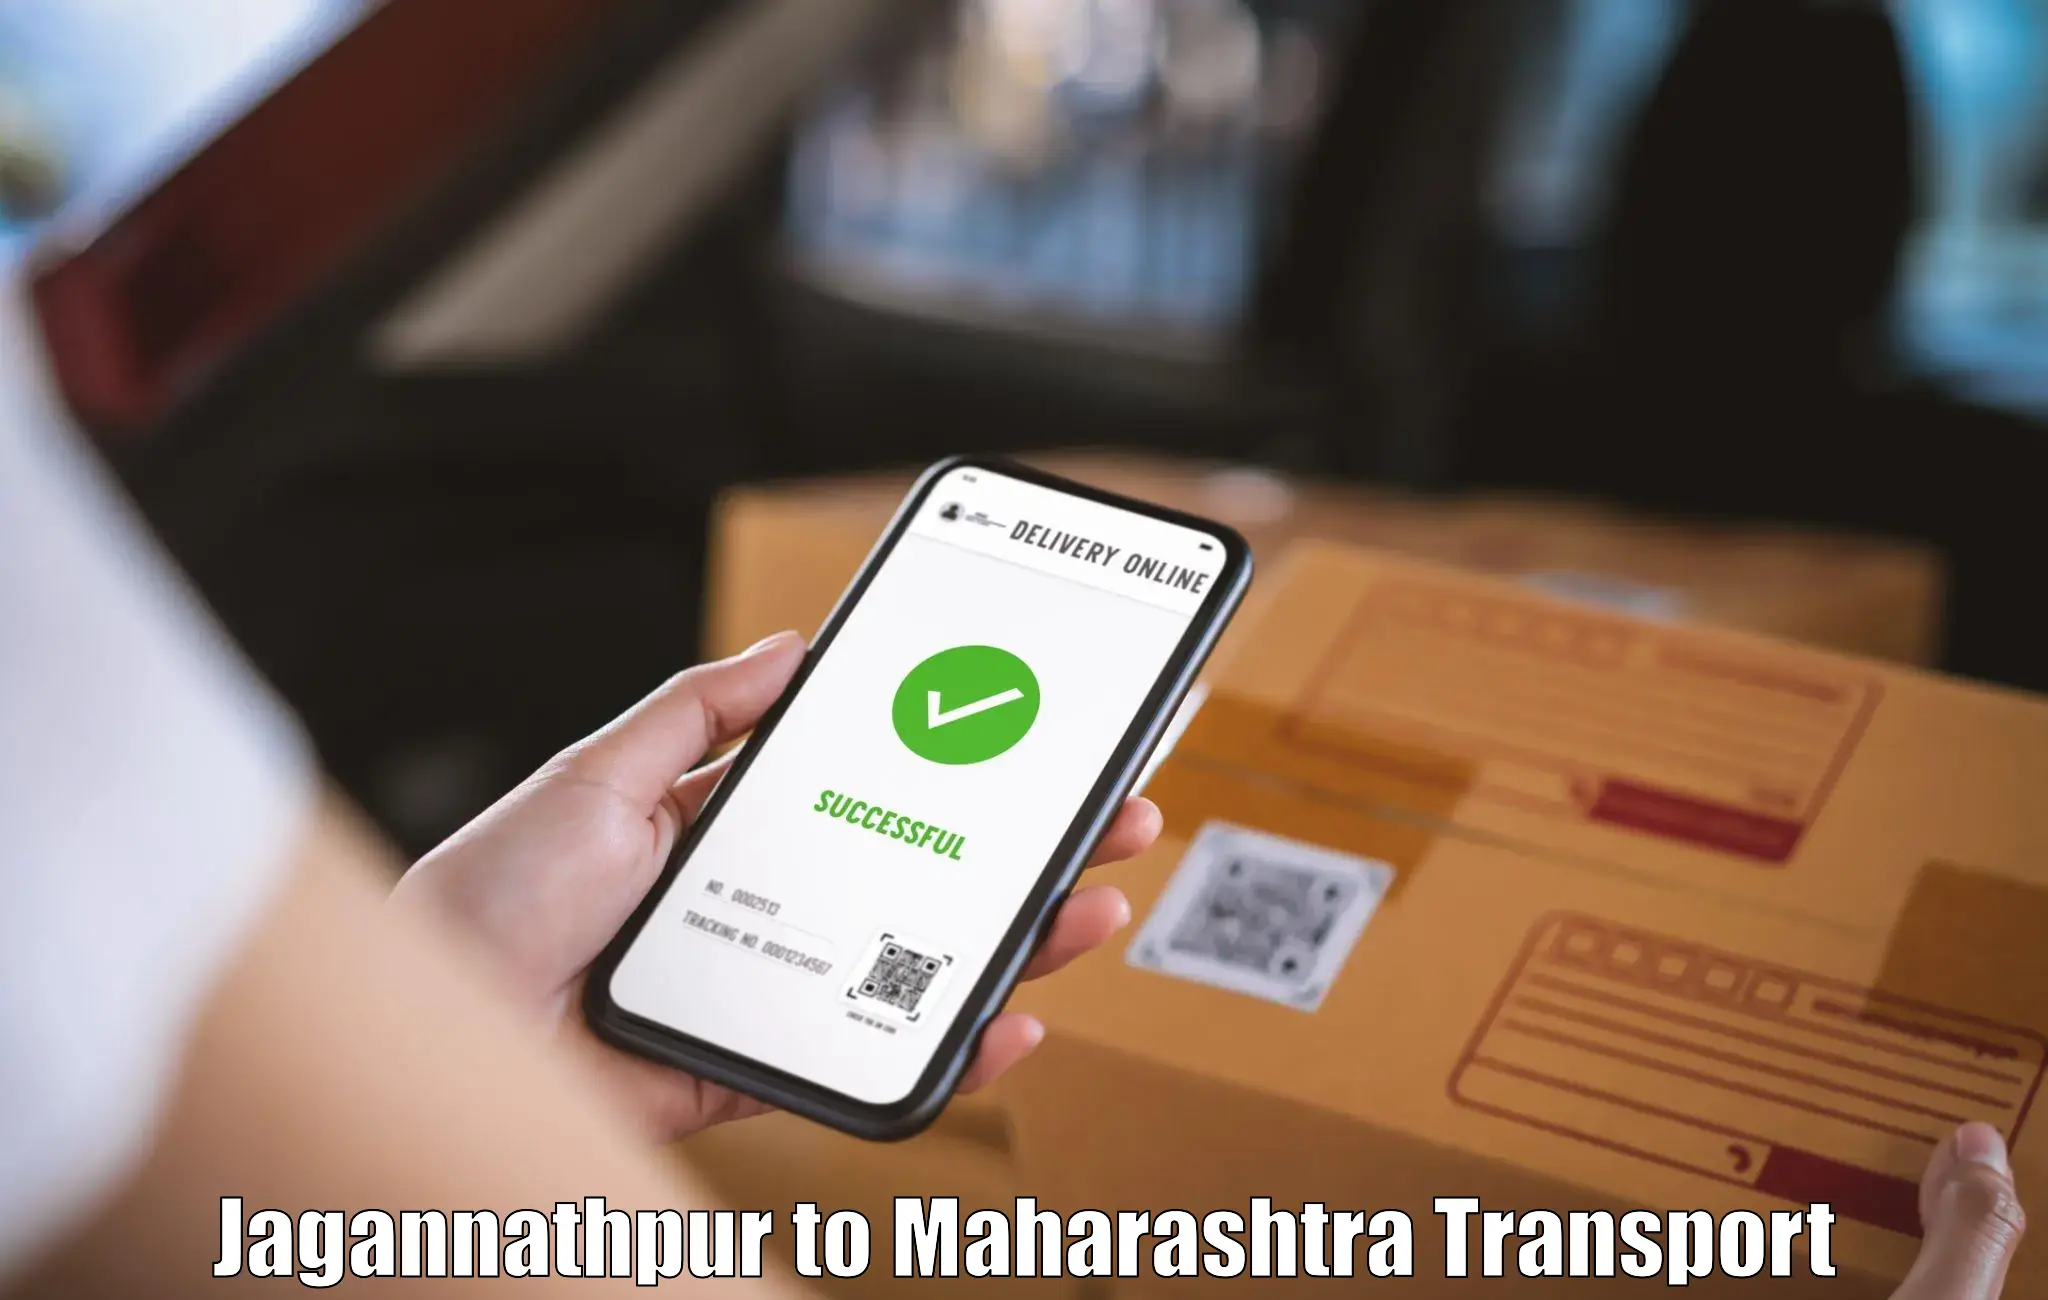 Nearby transport service Jagannathpur to Maharashtra